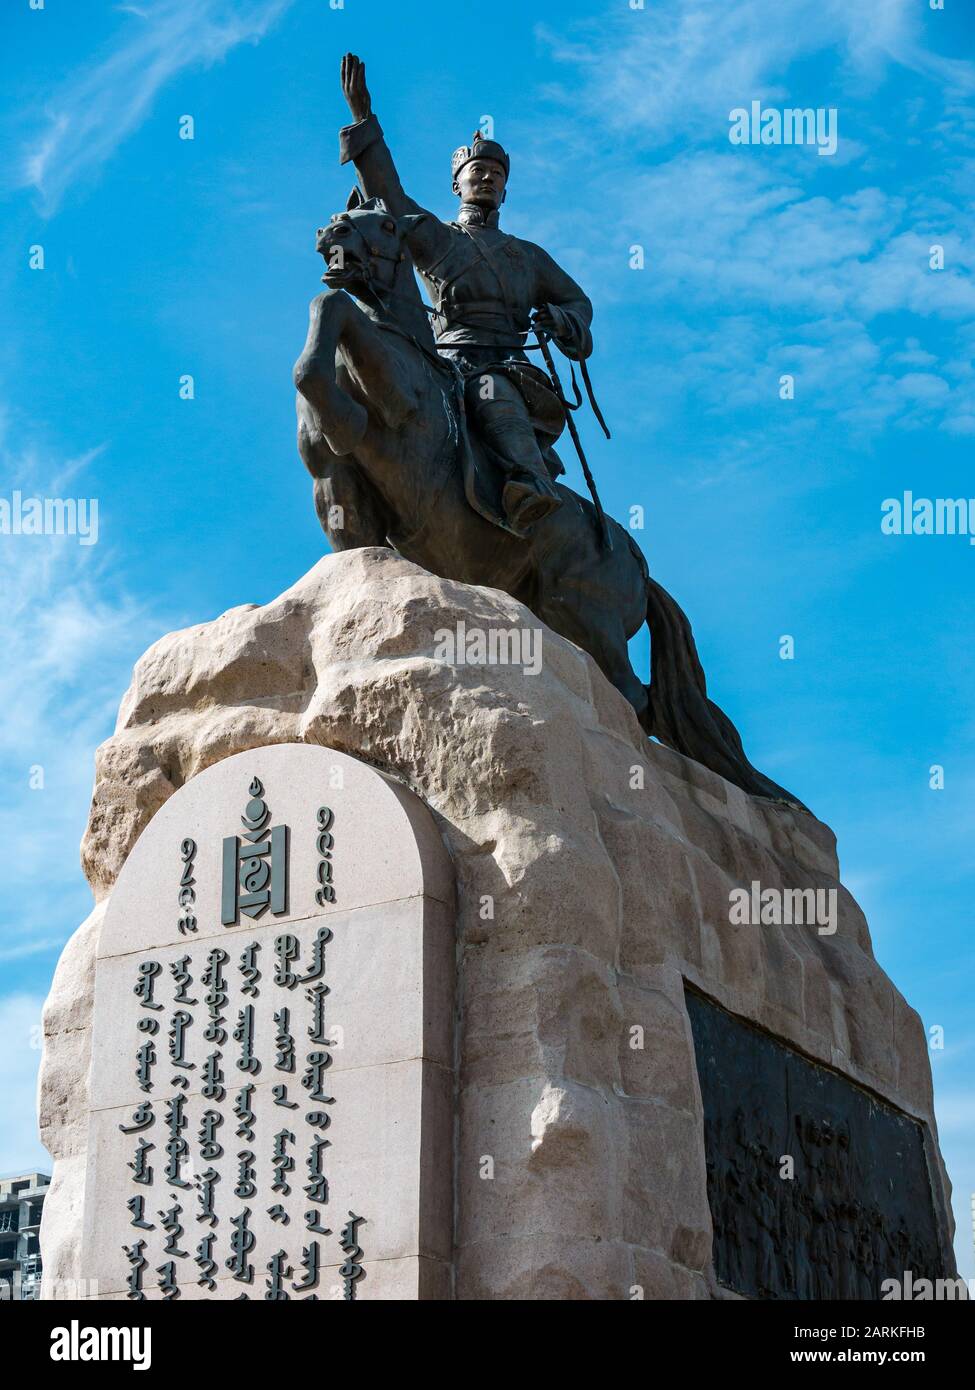 Statue équestre de Damdinii Sükhbaatar, fondateur du Parti Populaire mongol, place Sükhbaatar, Oulan-Bator, Mongolie Banque D'Images